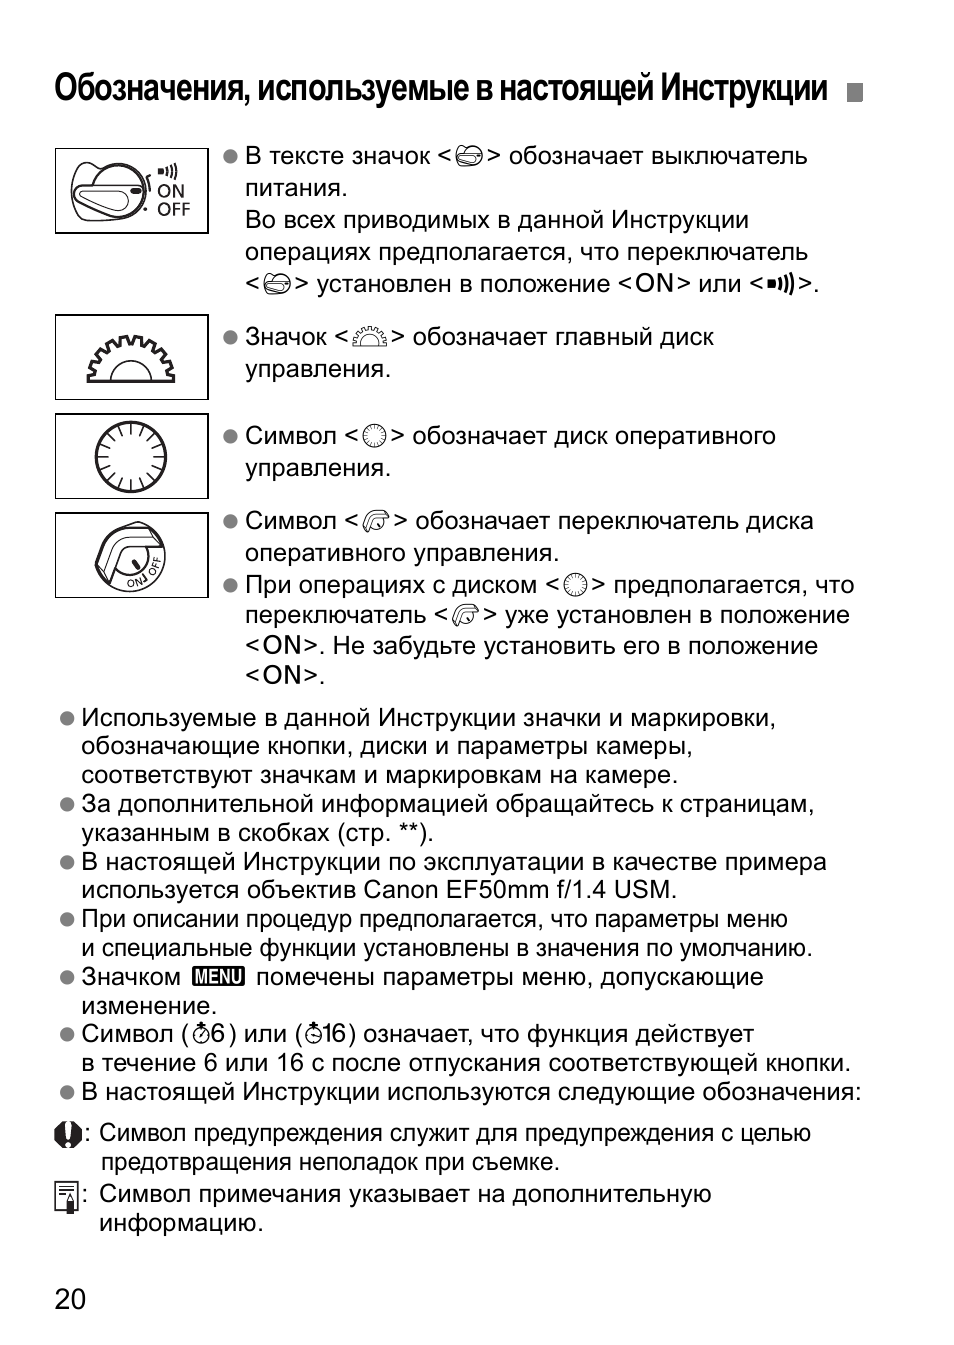 Обозначения, используемые в настоящей инструкции | Инструкция по эксплуатации Canon EOS 1D Mark II N | Страница 20 / 196